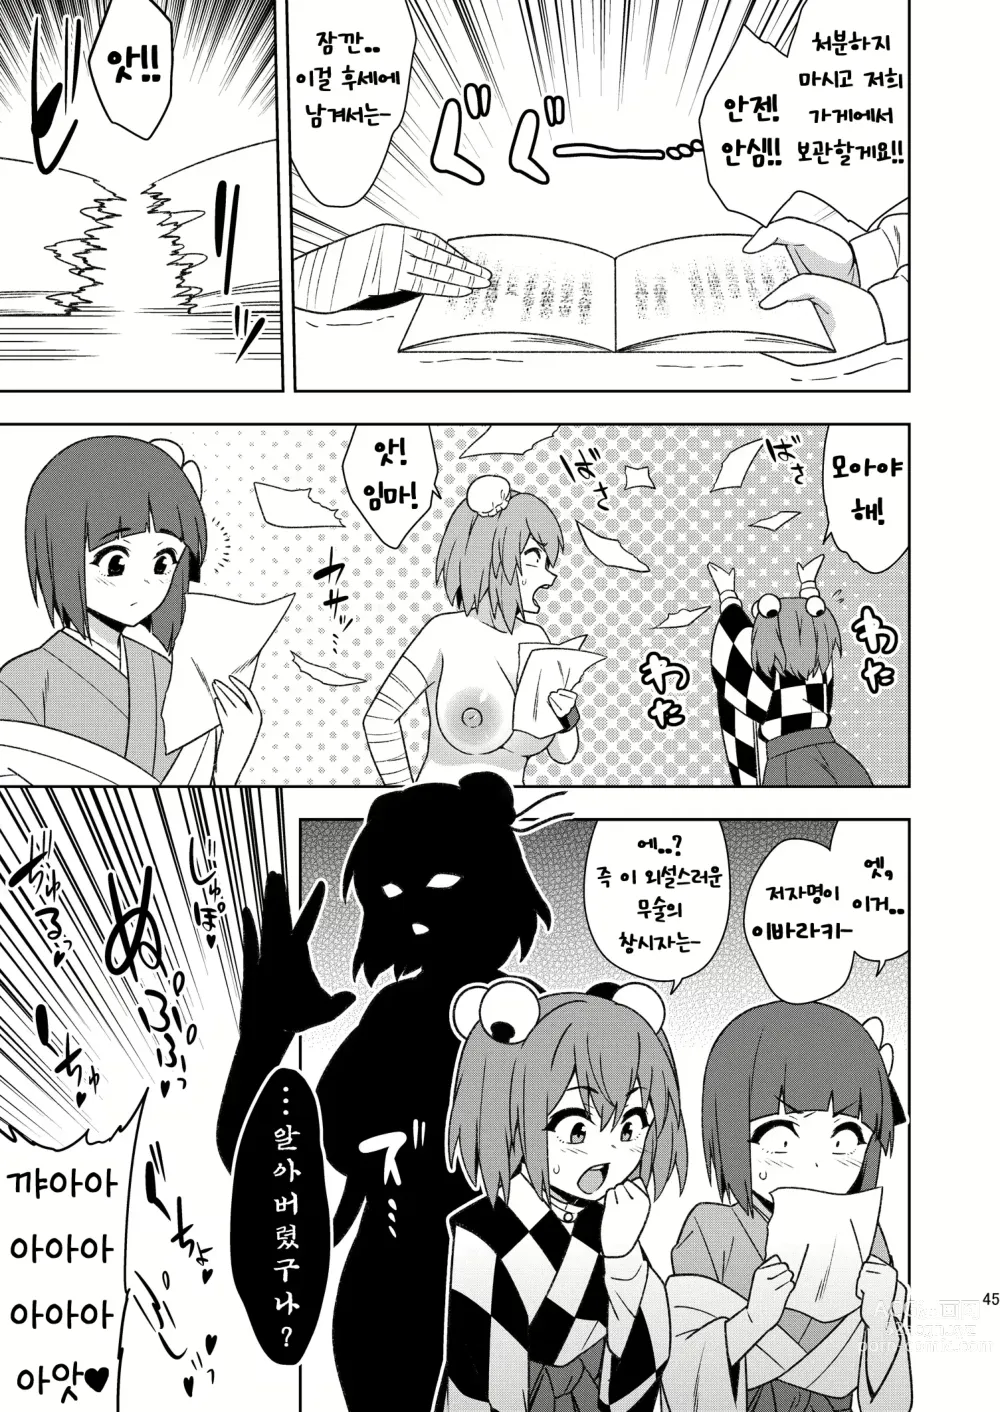 Page 44 of doujinshi Butou bouchuujutsu retsuden in Pi musou l 무투방중술열전 음란핑크무쌍